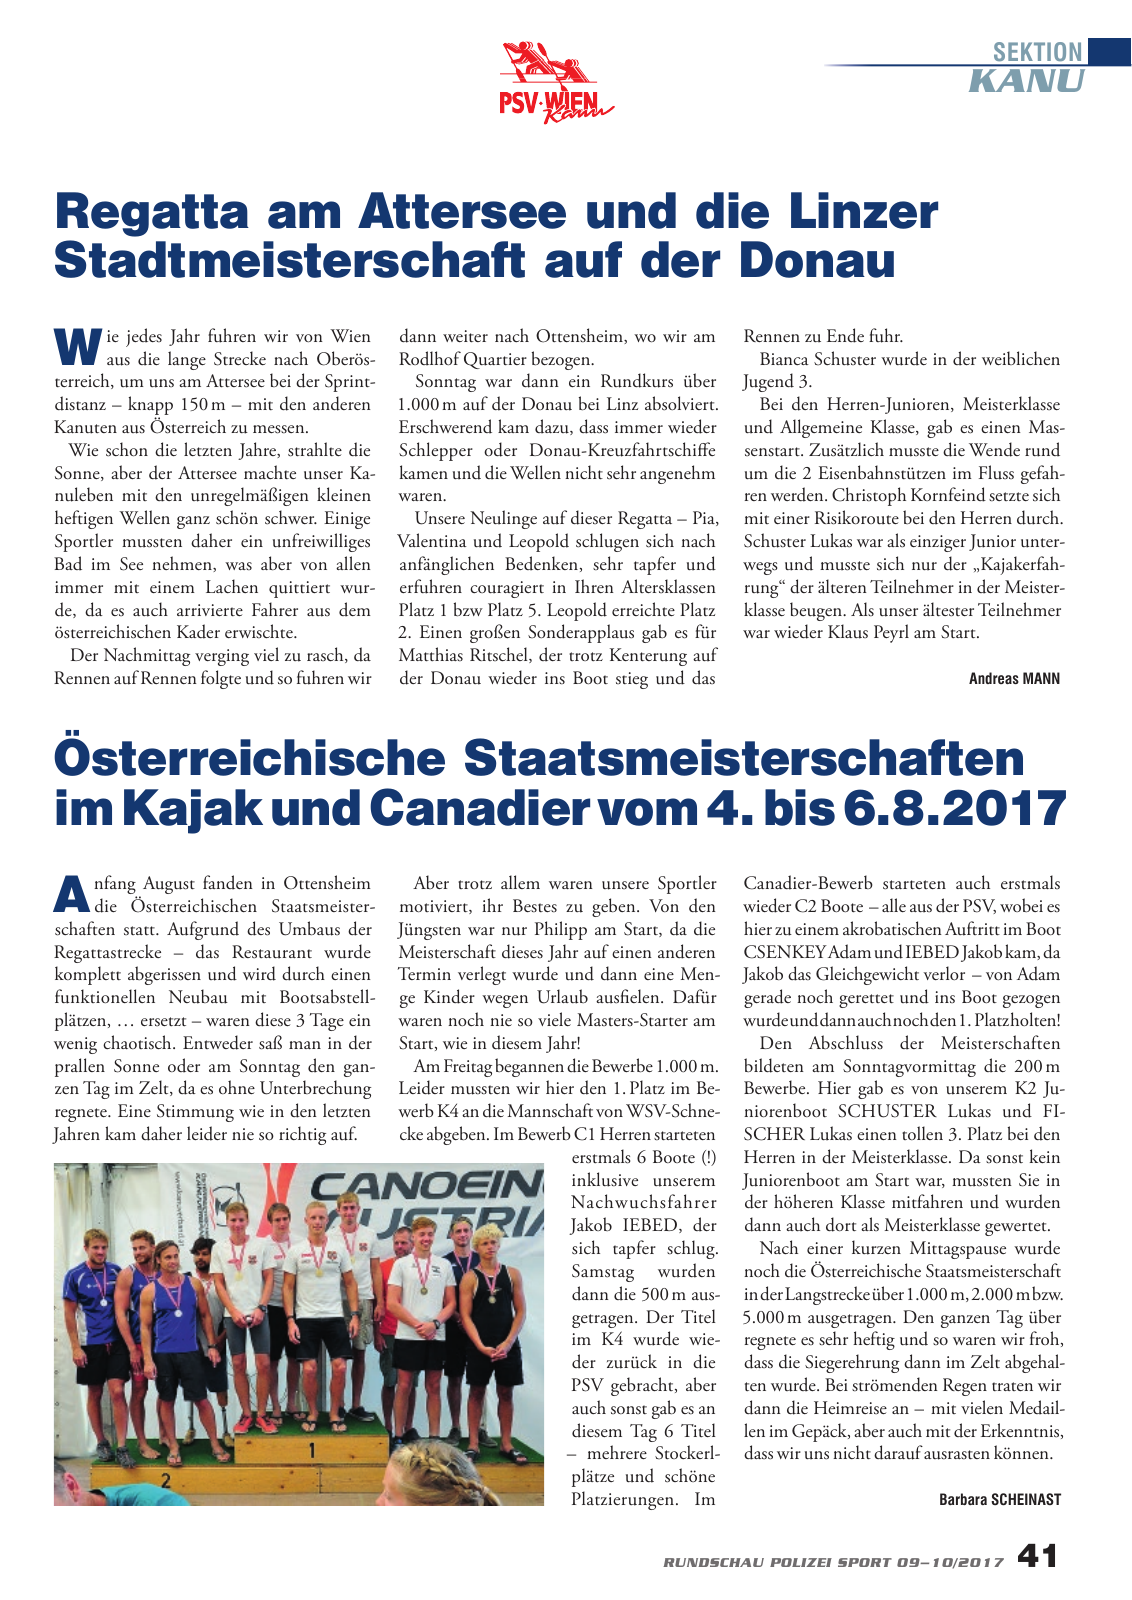 Vorschau Rundschau Polizei Sport 09-10/2017 Seite 41